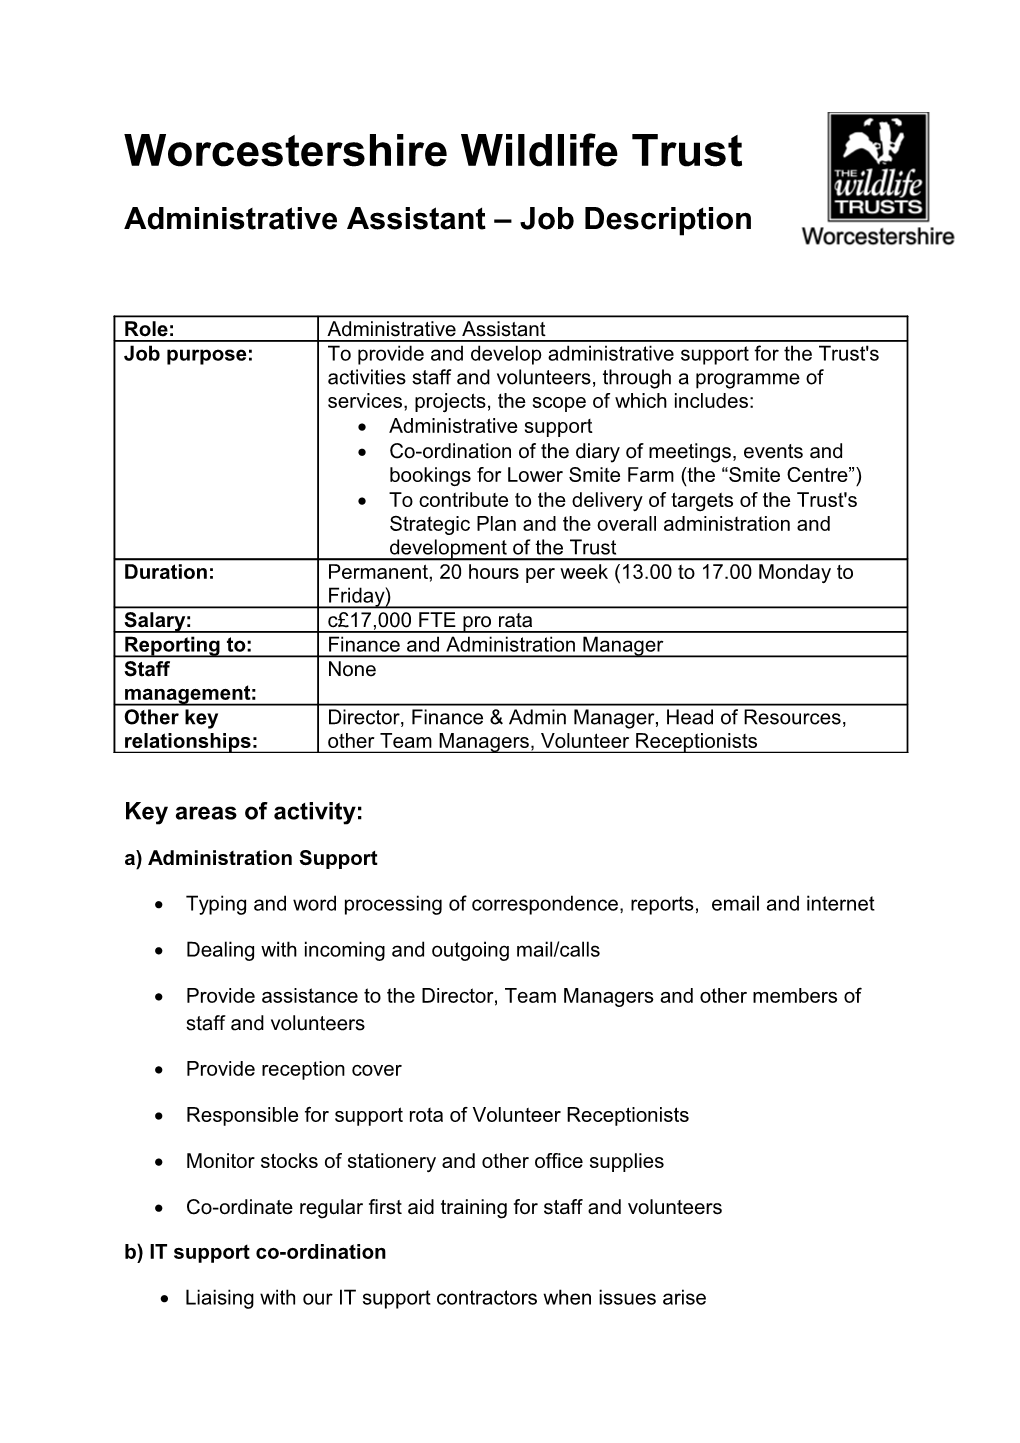 Administrative Assistant Job Description s1